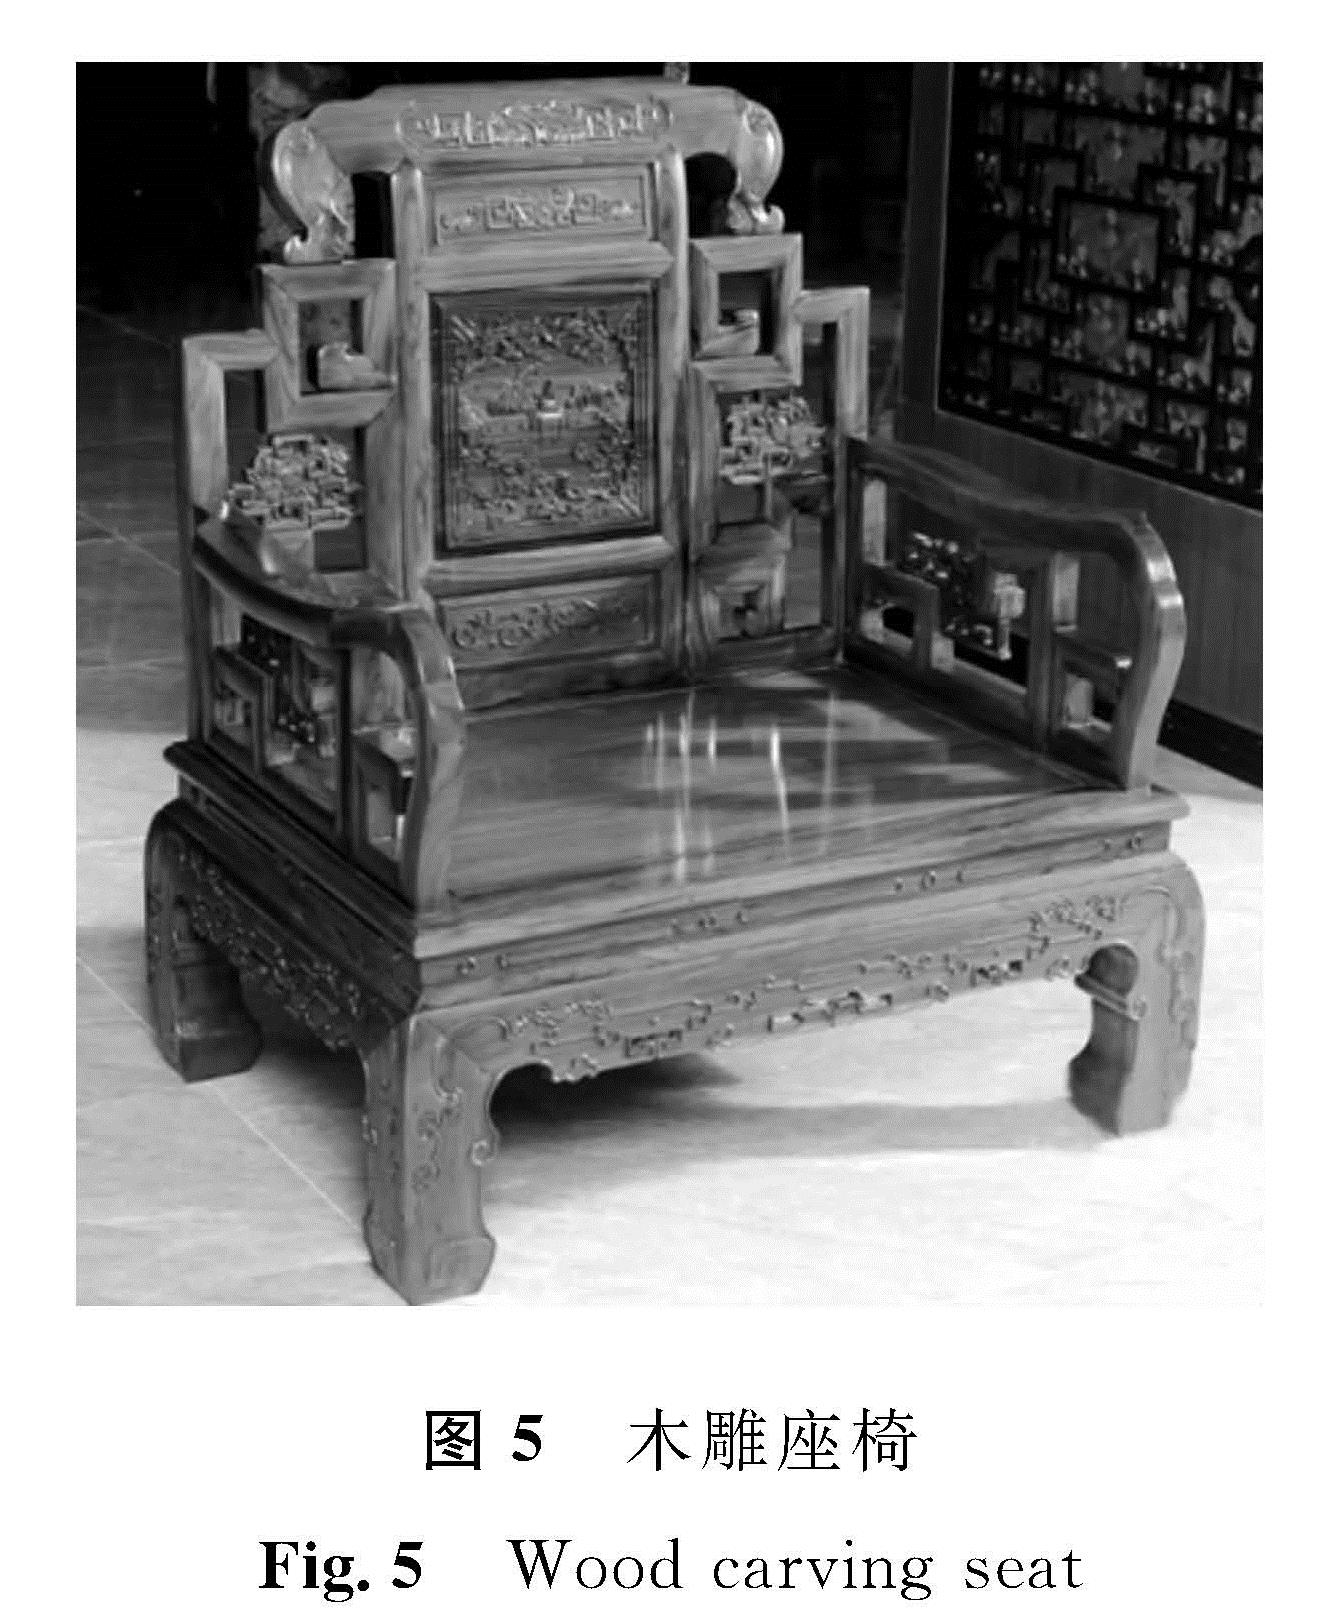 图5 木雕座椅<br/>Fig.5 Wood carving seat